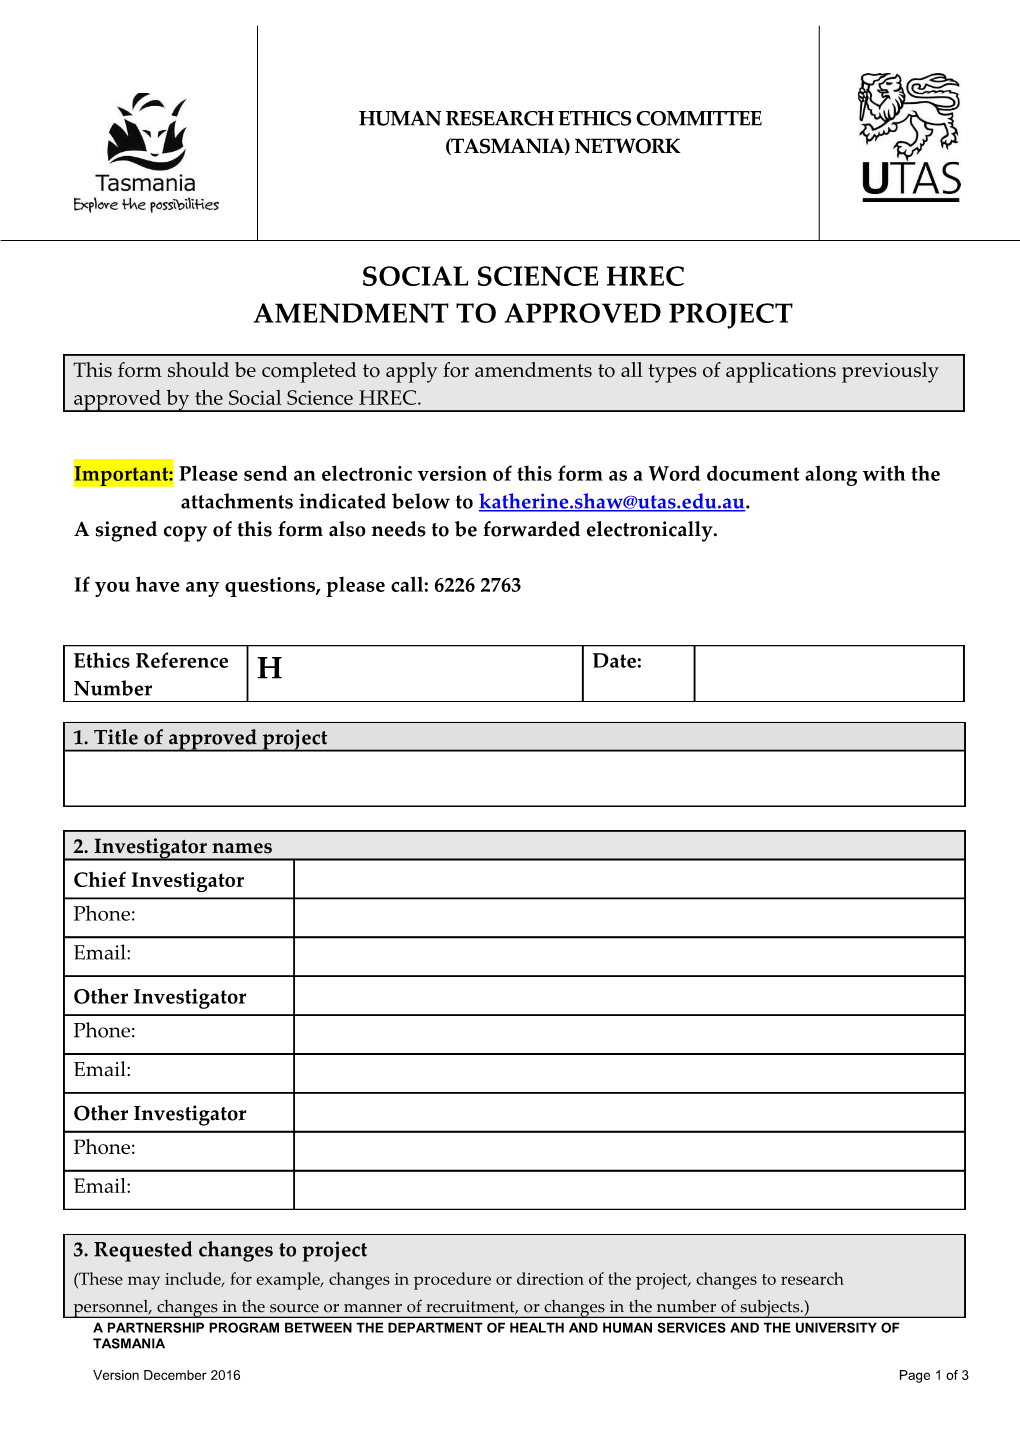 Social Science HREC